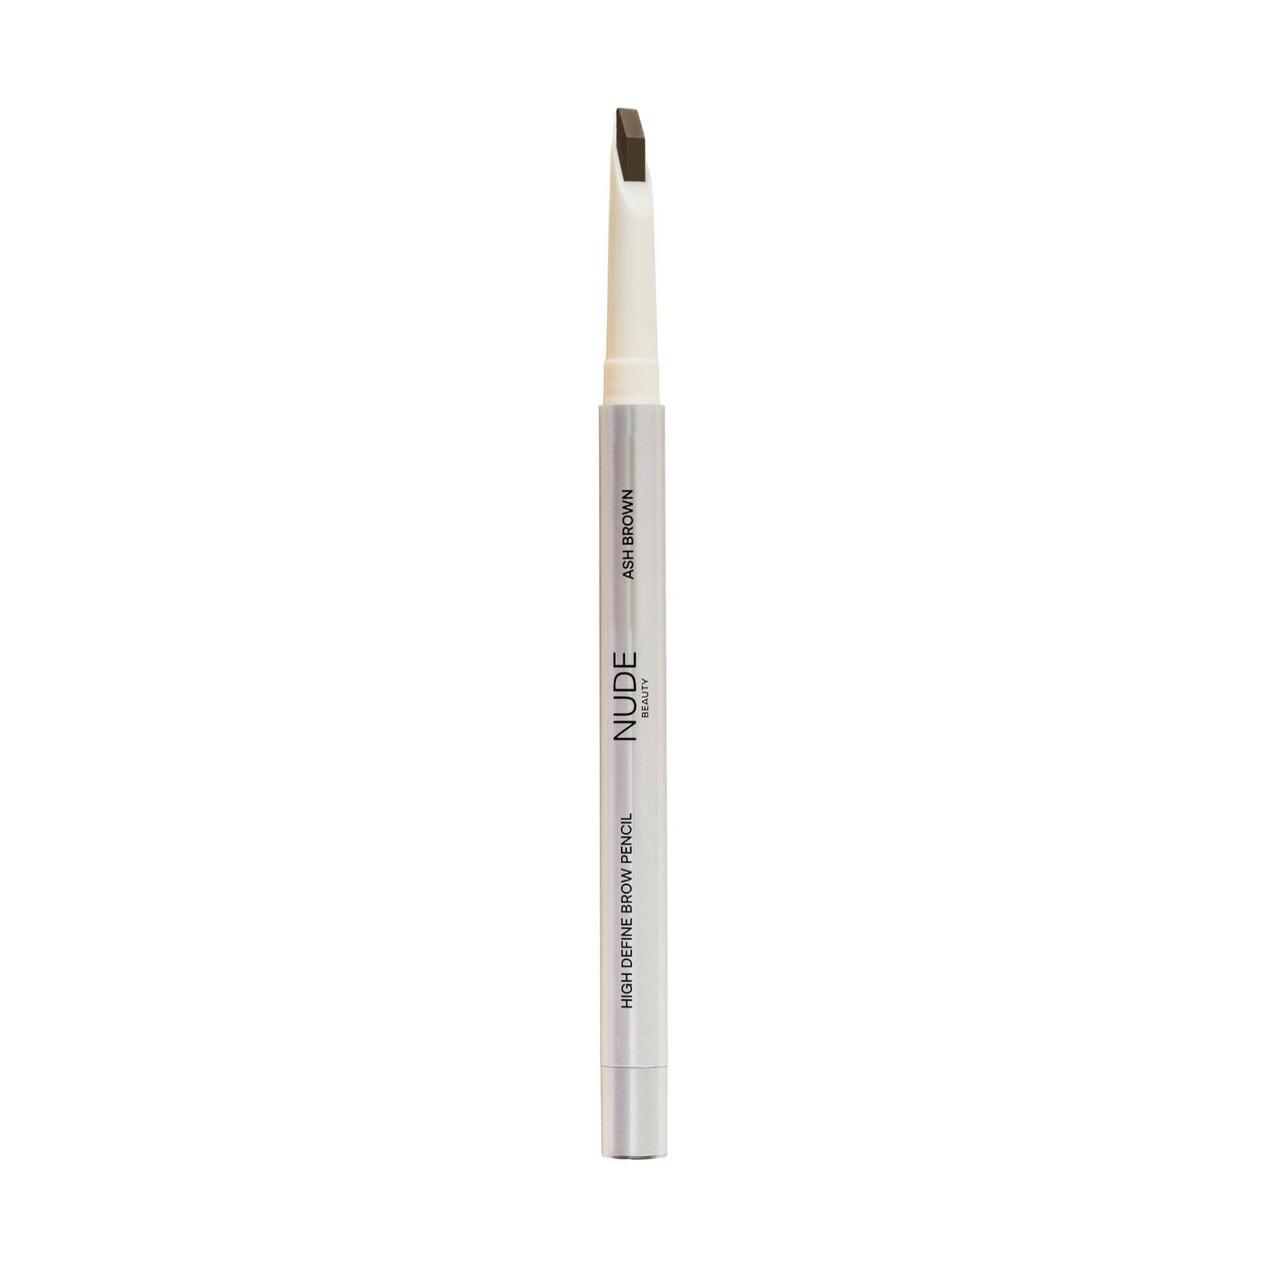 Tilbud: Nude Beauty High Define Brow Pencil Ash Brown kr 199,2 på VITA